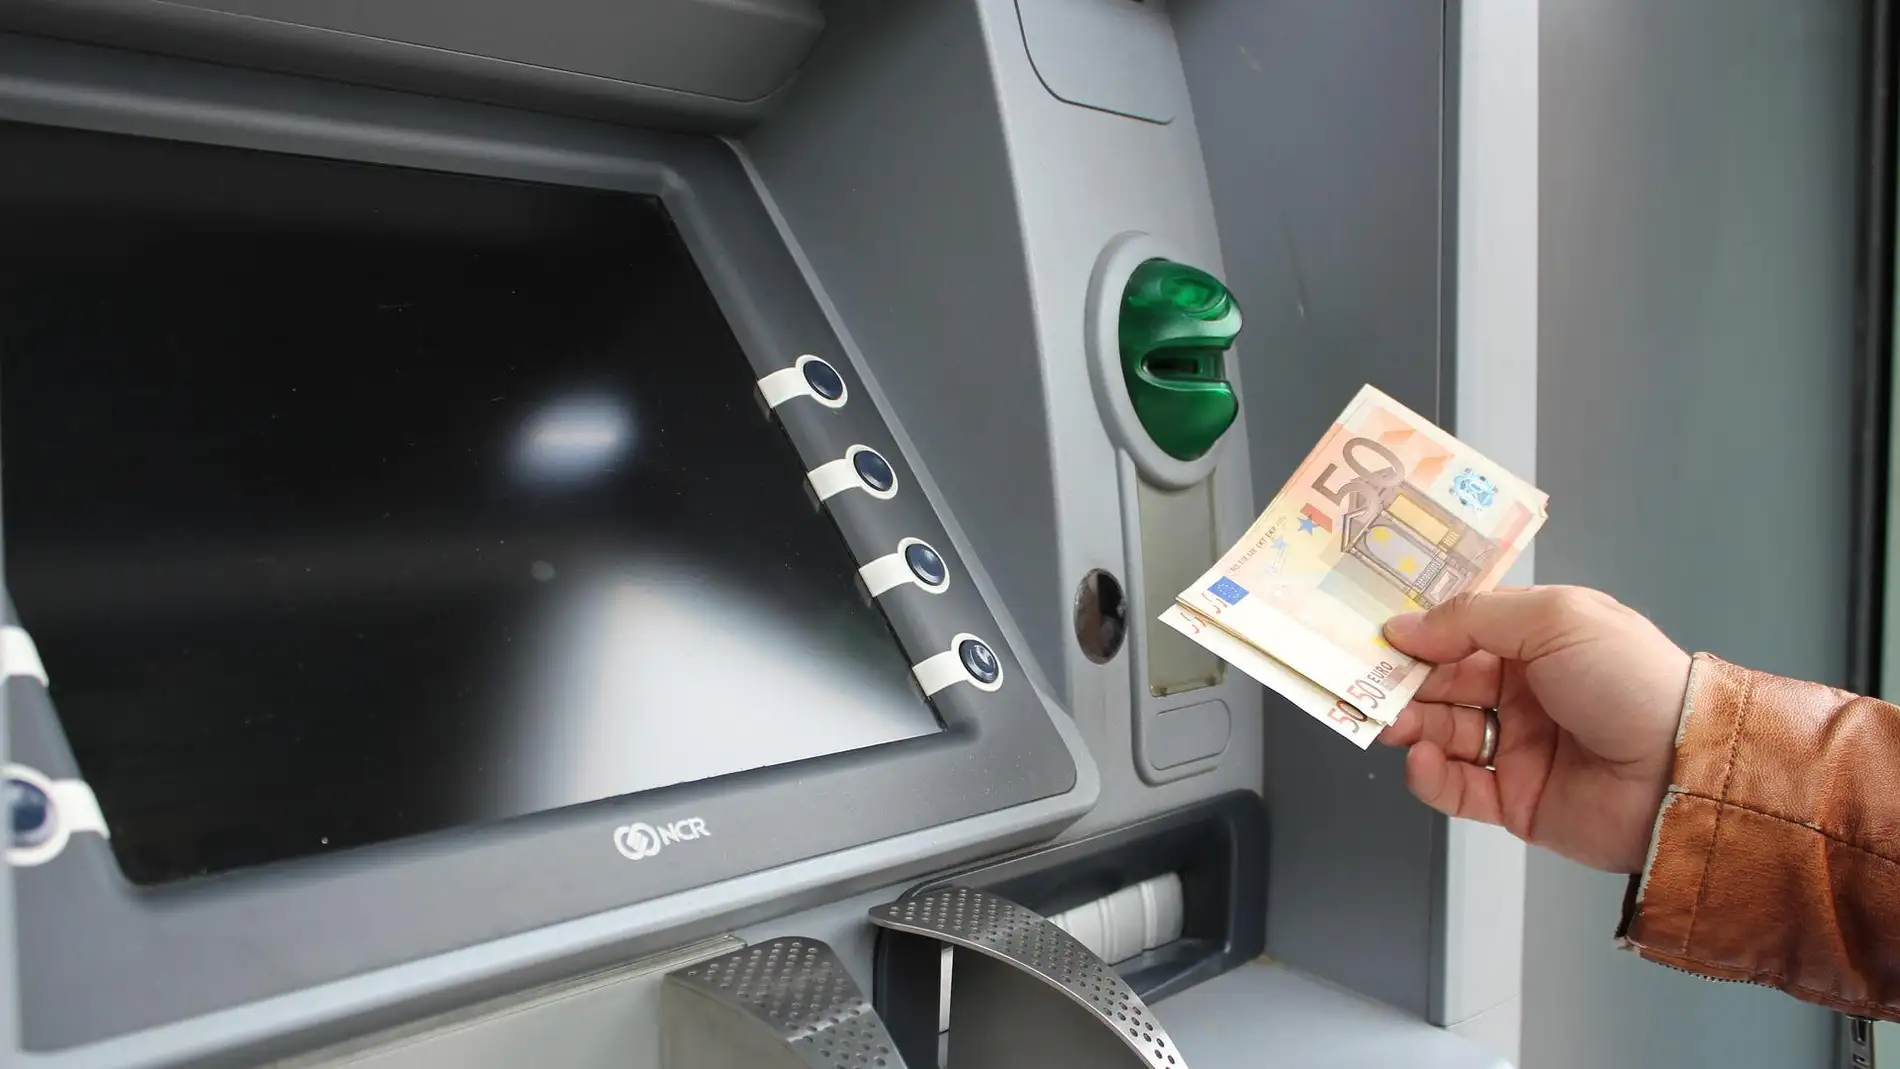 Una persona se dispone a ingresar dinero en un cajero, en una imagen de archivo/ Pixabay